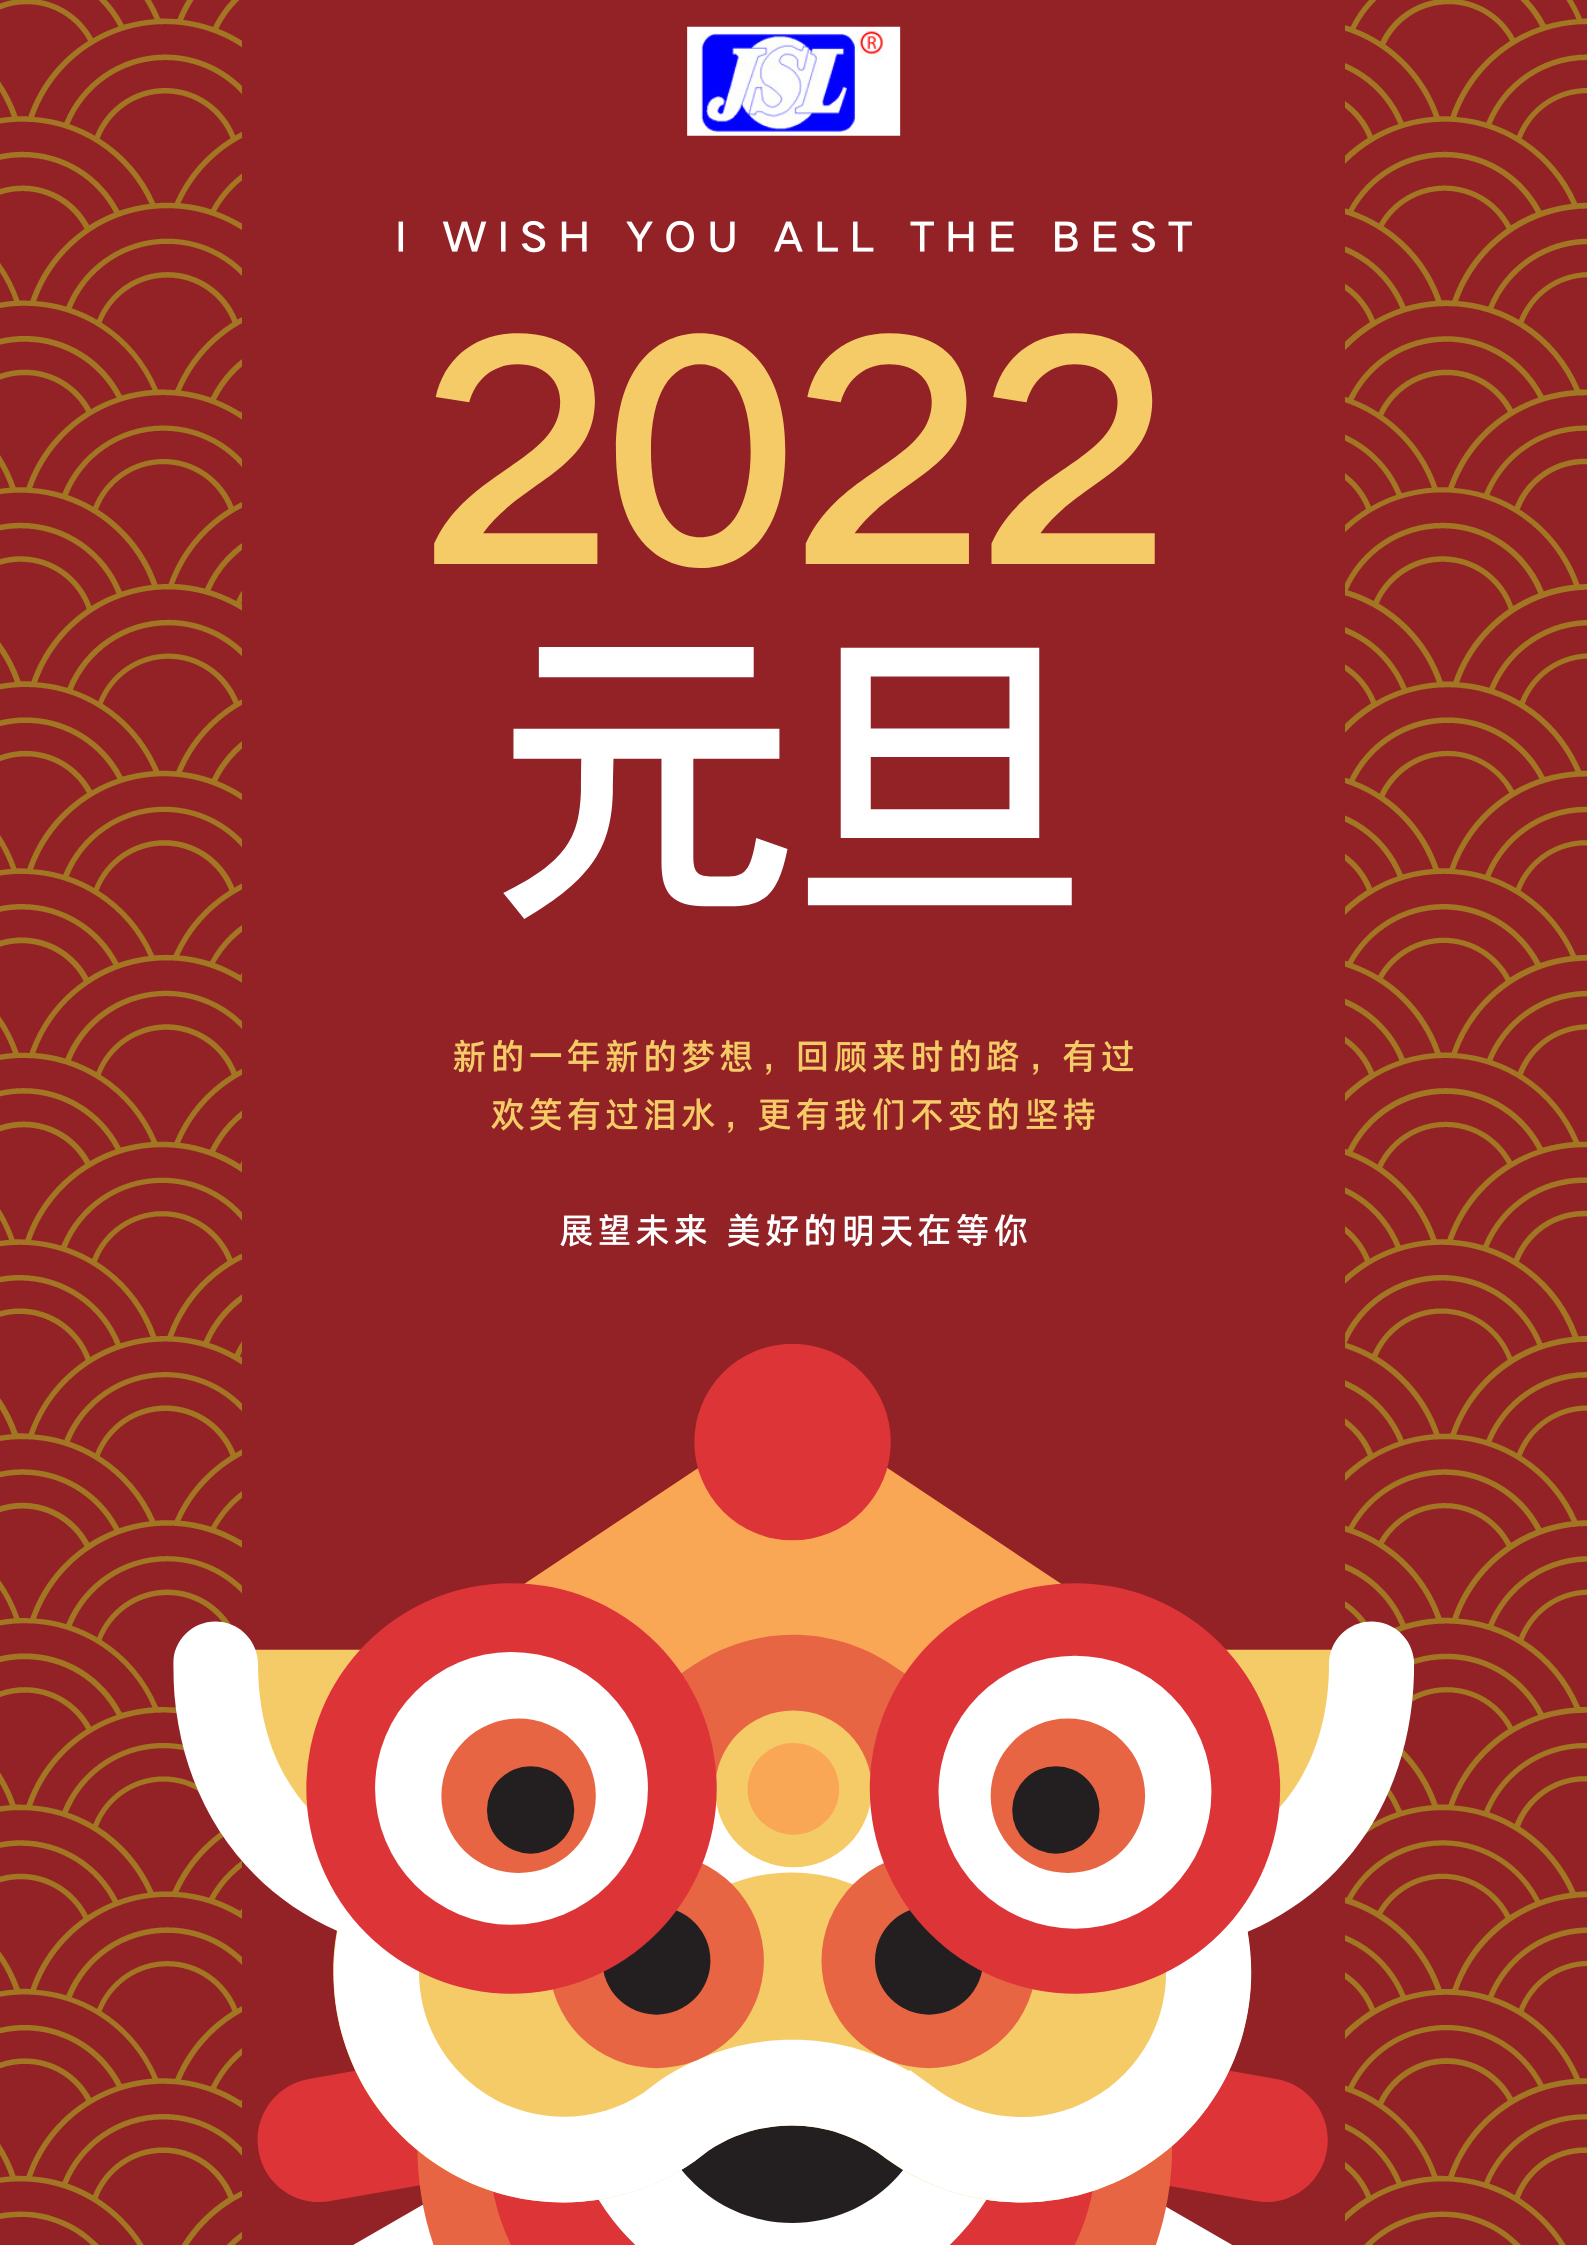 江山來祝廣大客戶2022元旦快樂！